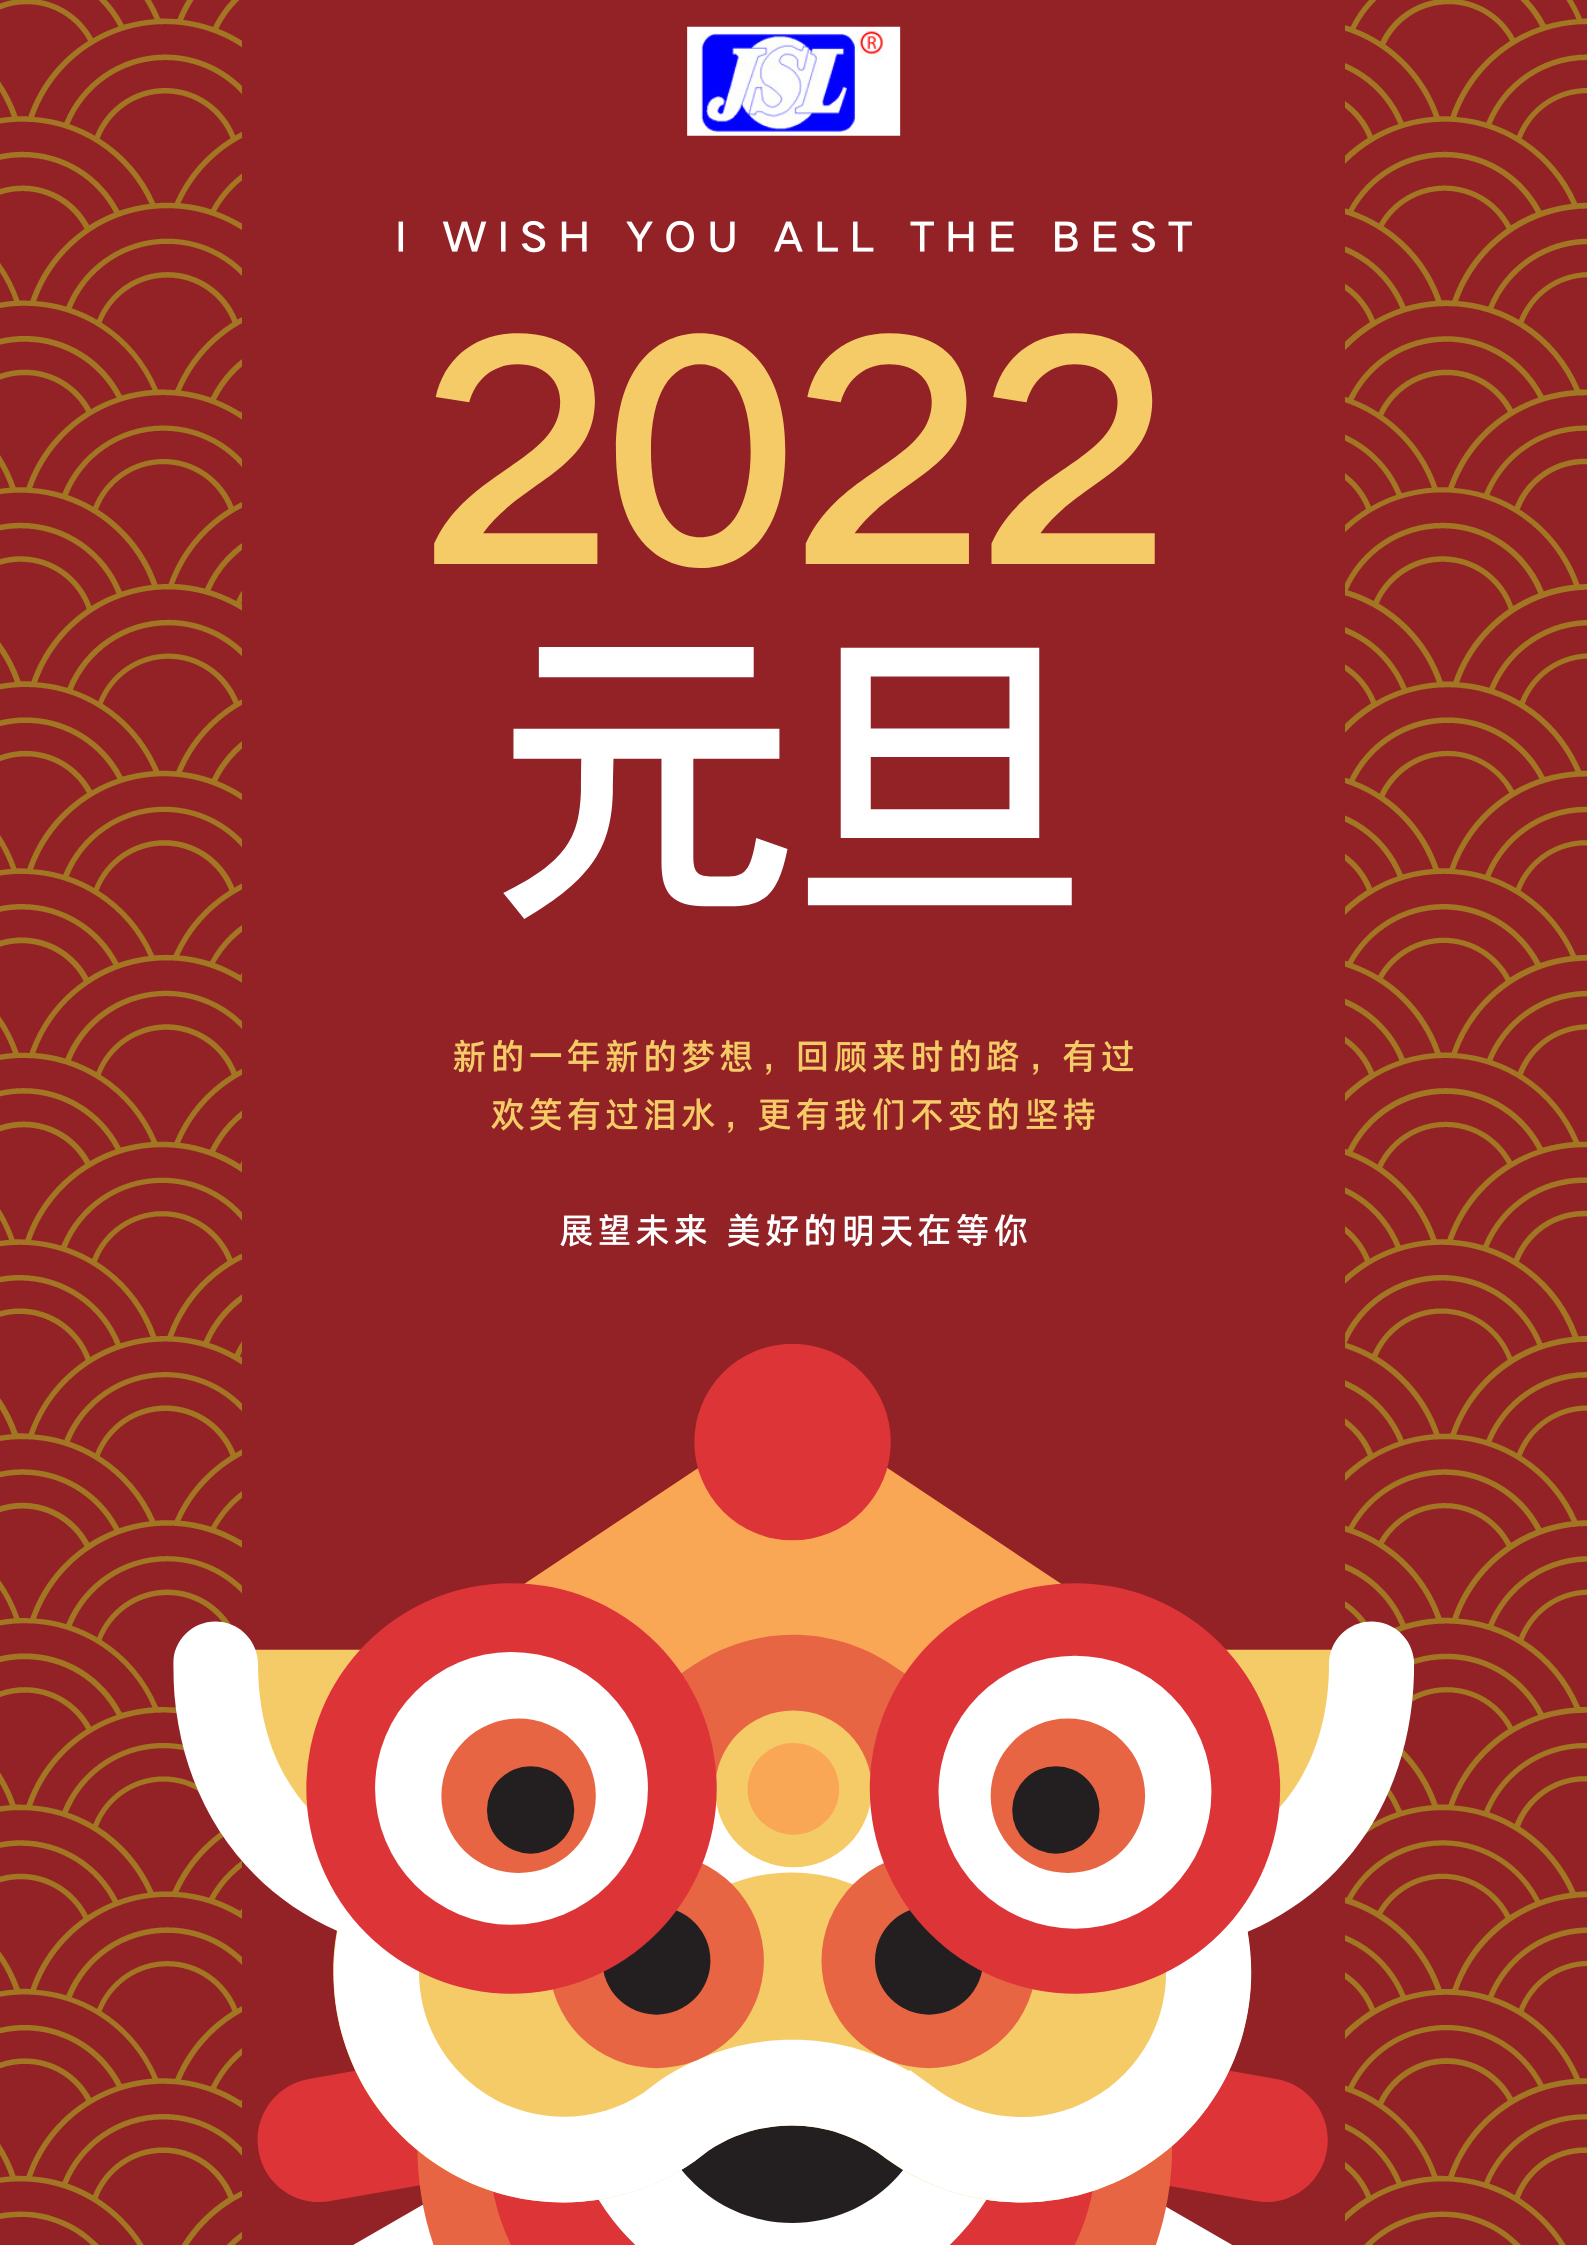 江山來祝廣大客戶2022元旦快樂！